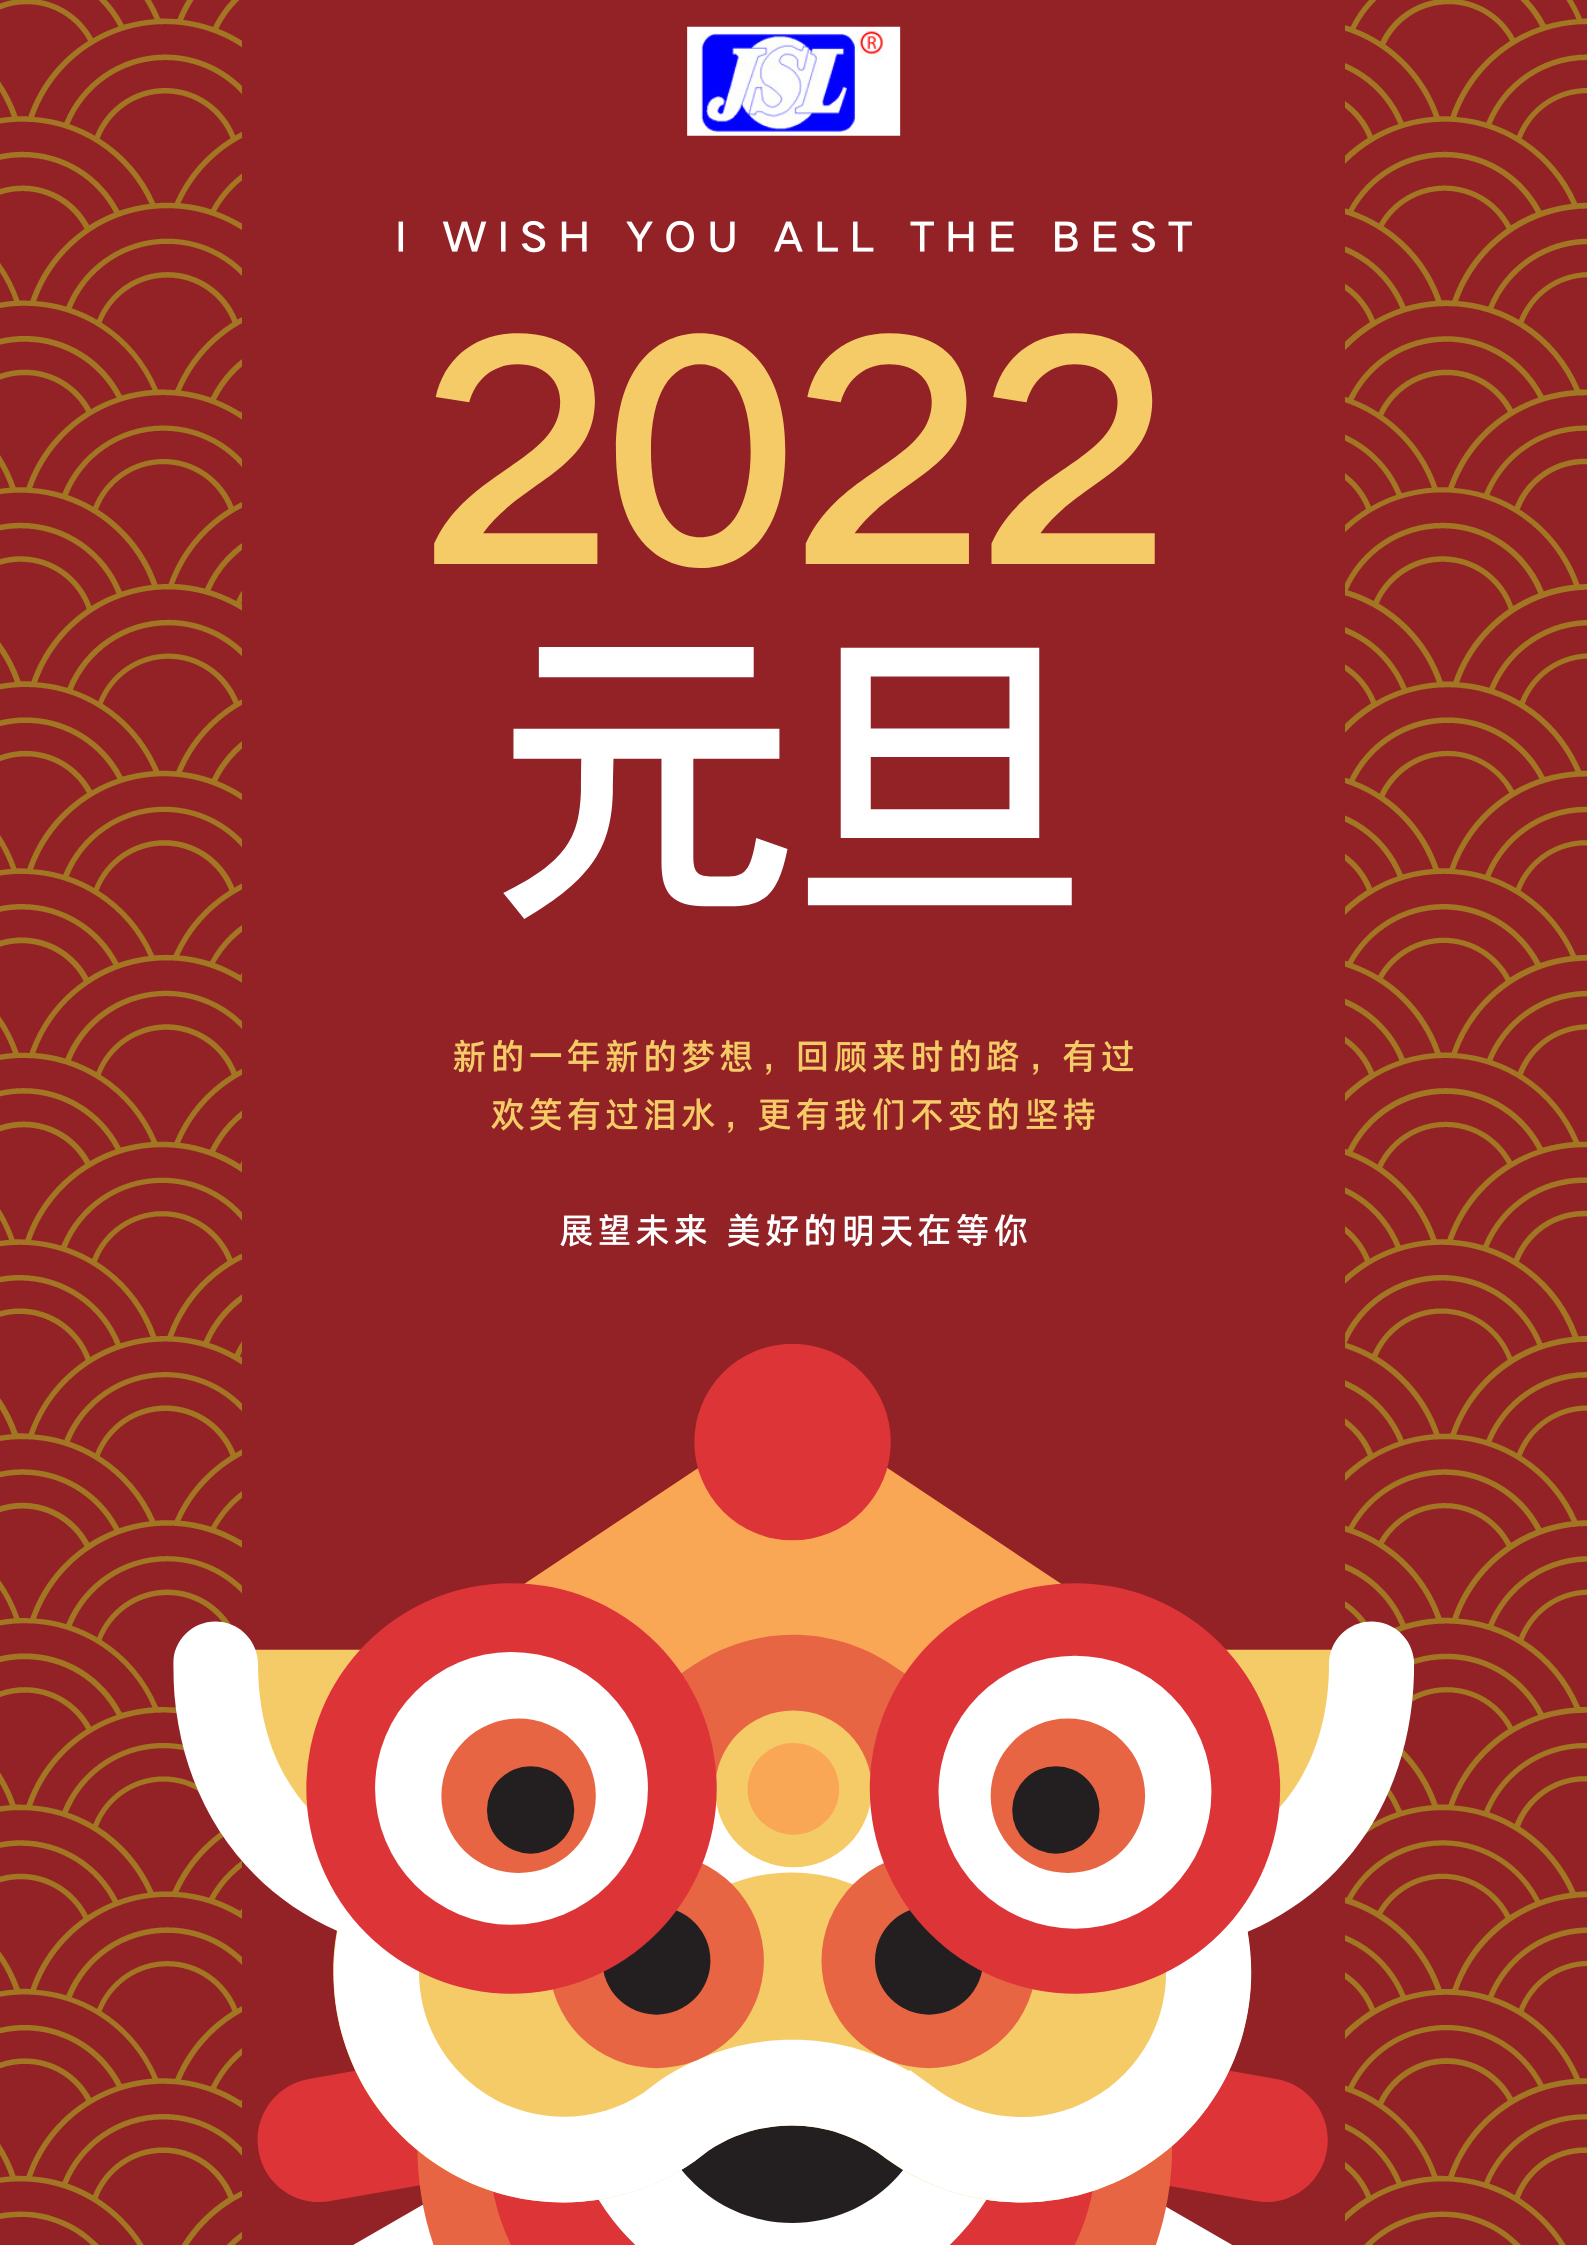 江山來祝廣大客戶2022元旦快樂！